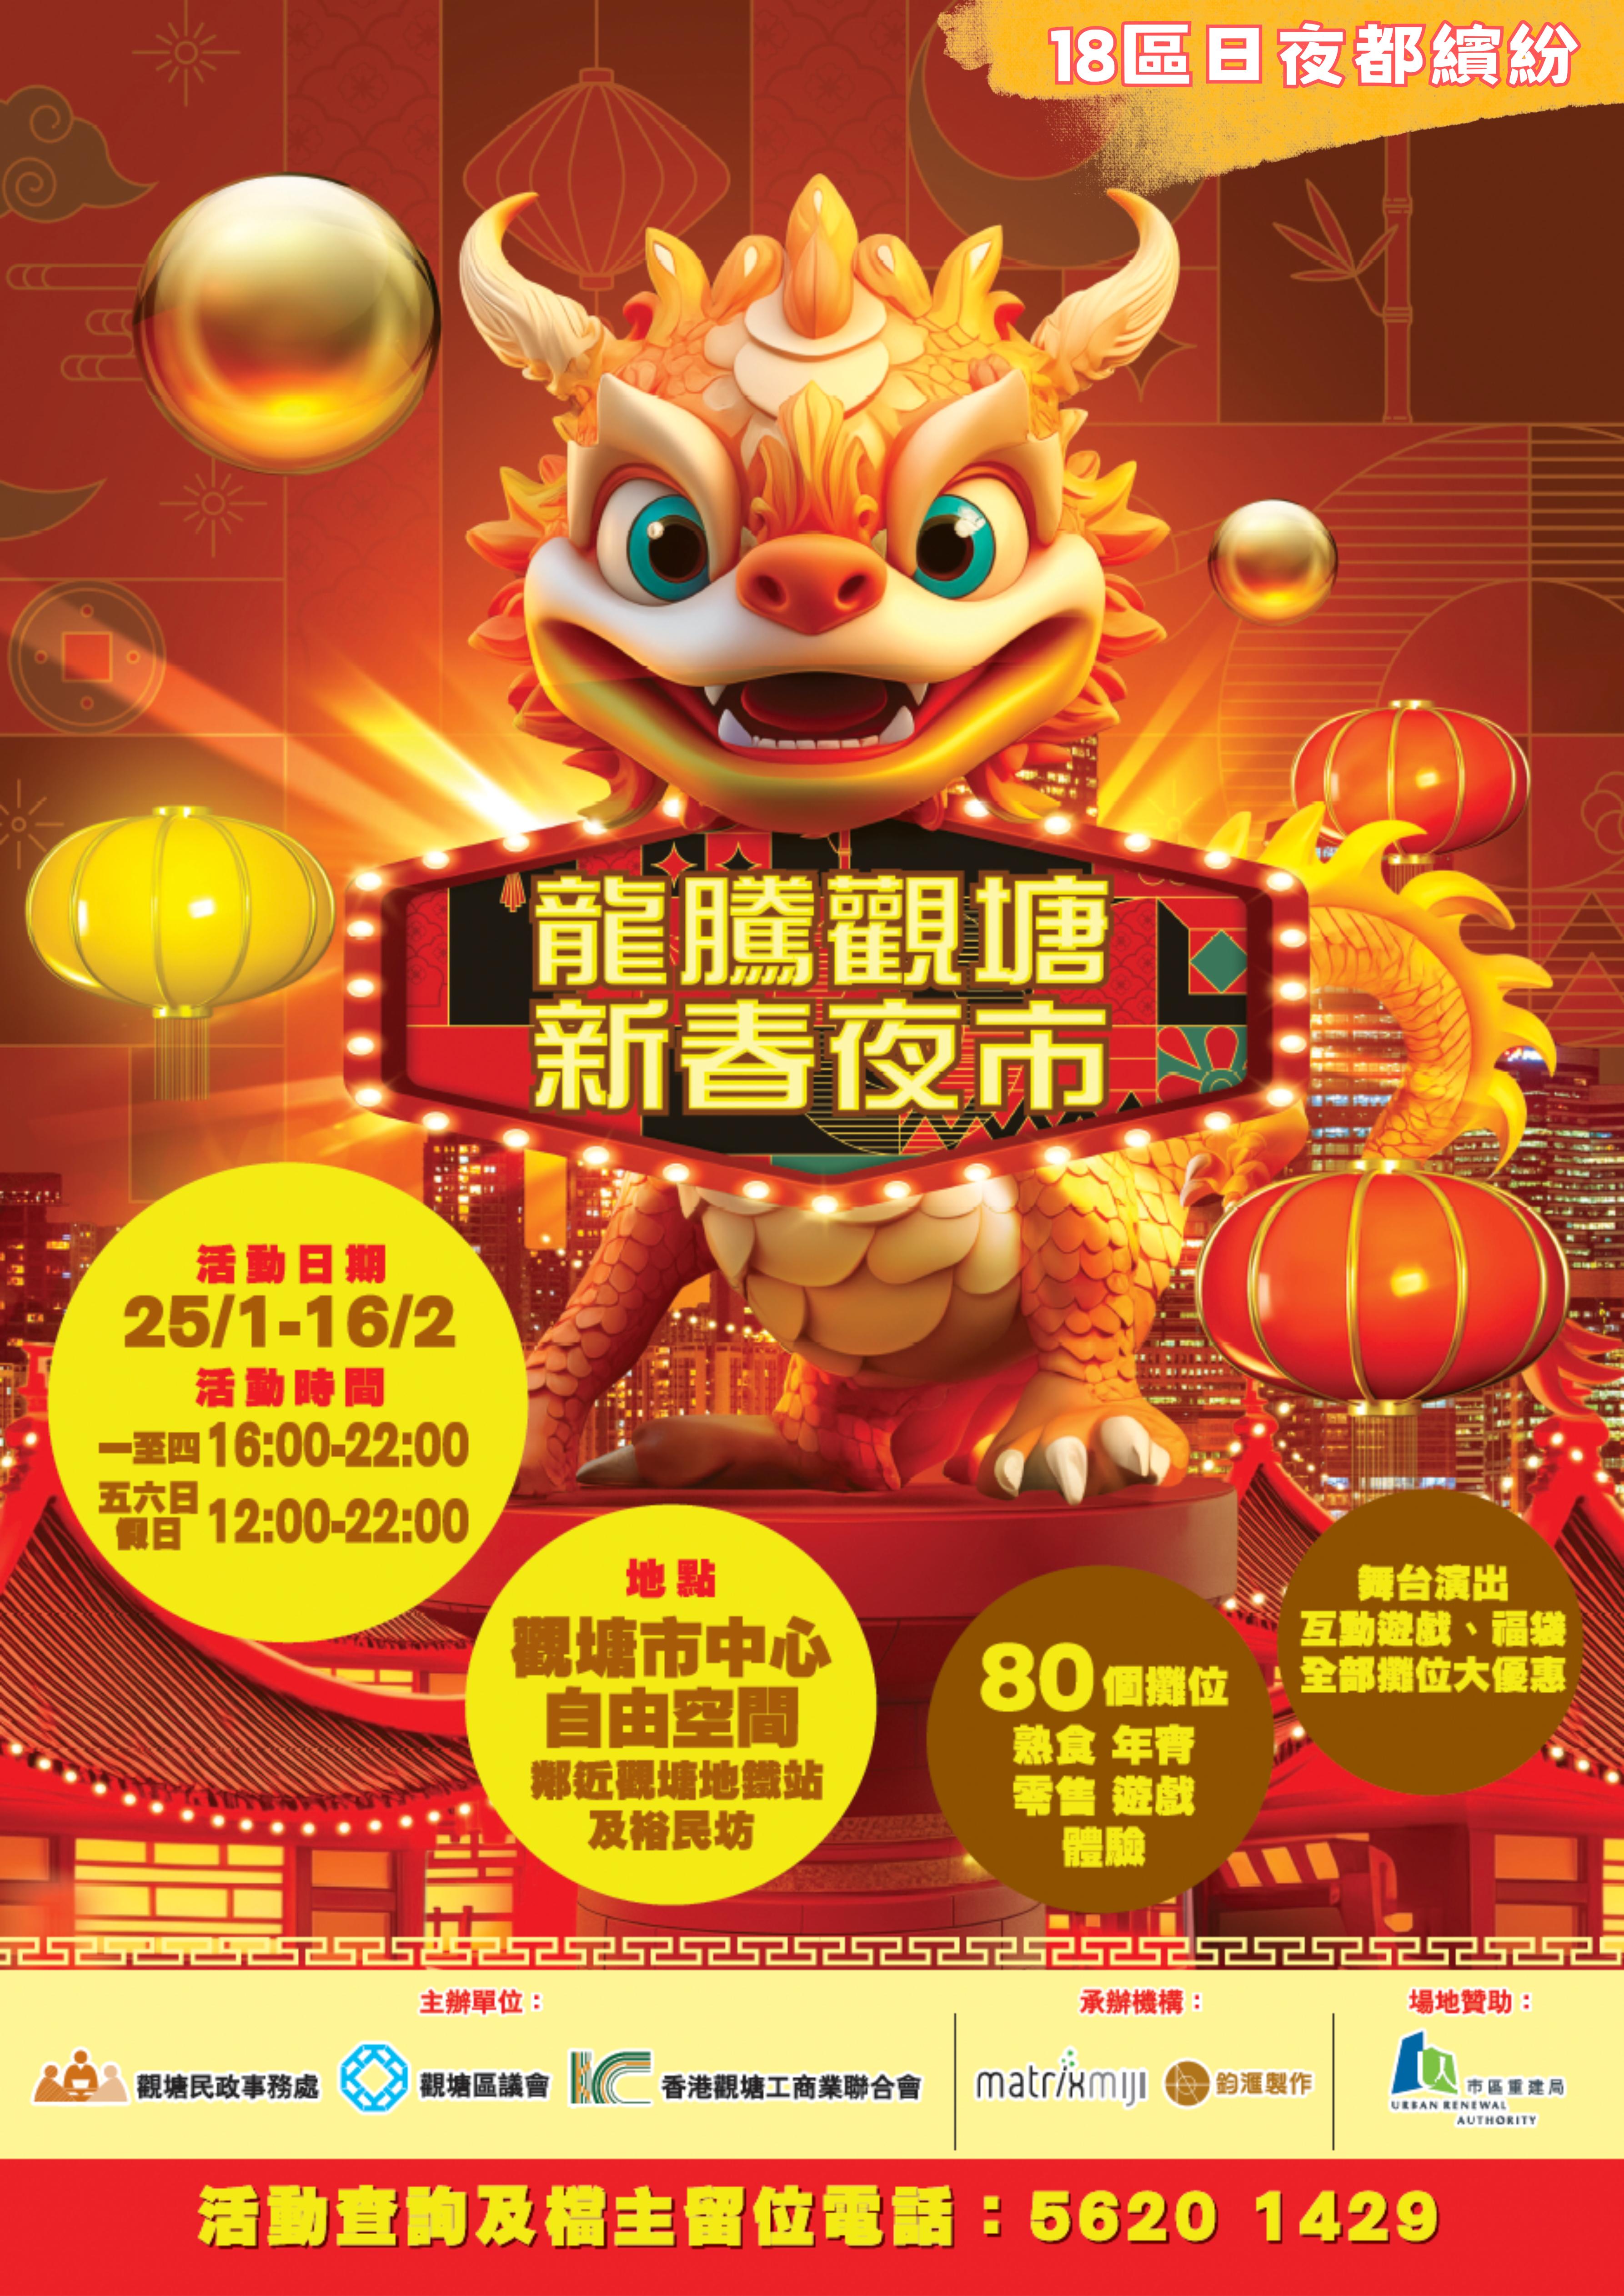 龍騰觀塘新春夜巿, Year of Dragon Kwun Tong Night Bazaar